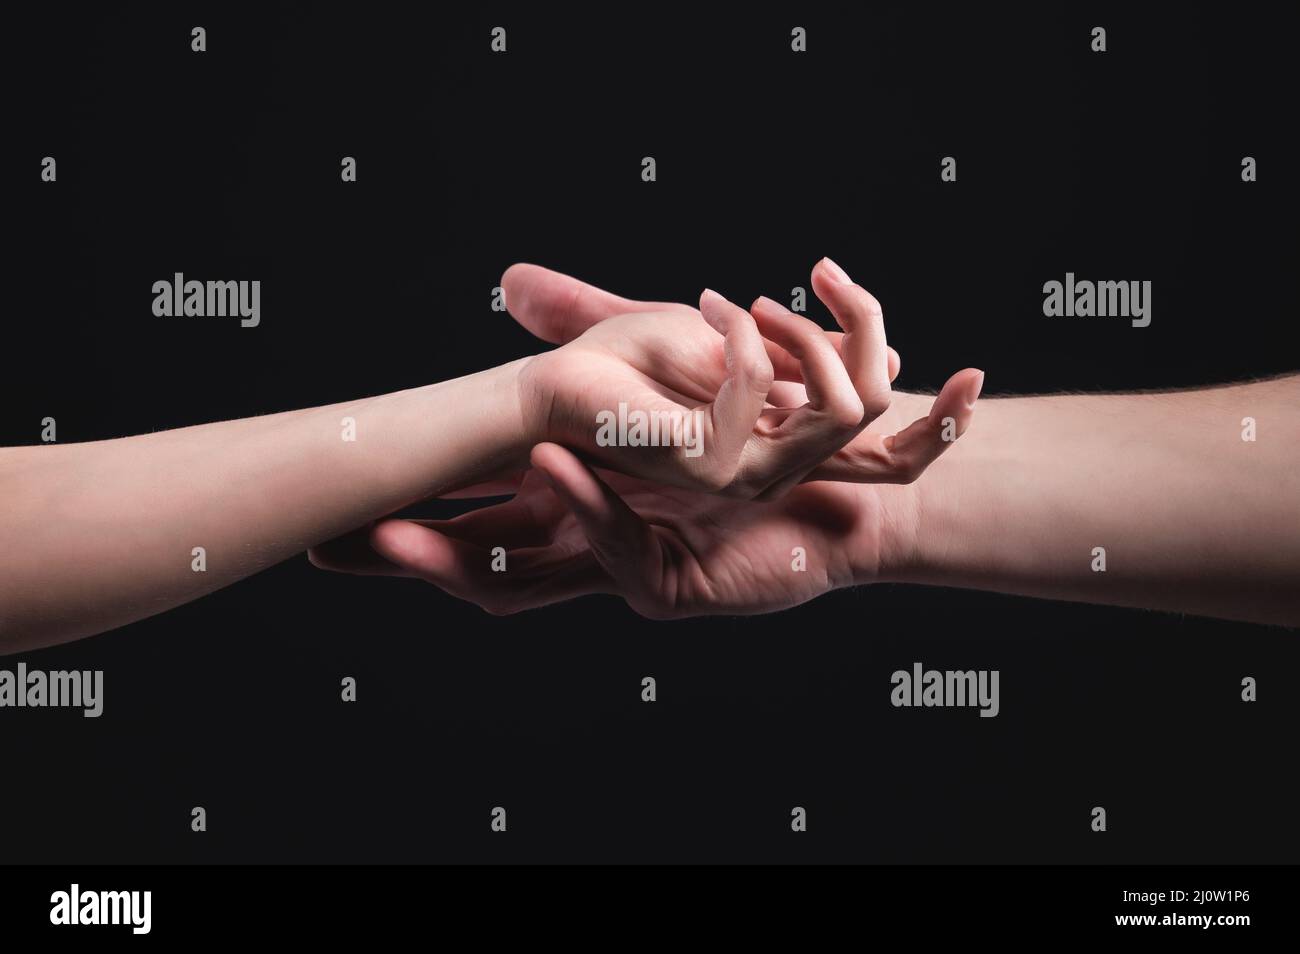 Eine Nahaufnahme von zwei Händen, männlich und weiblich, berühren sich sanft. Das Konzept zitterte Ablehnung zwischen den Geschlechtern Stockfoto